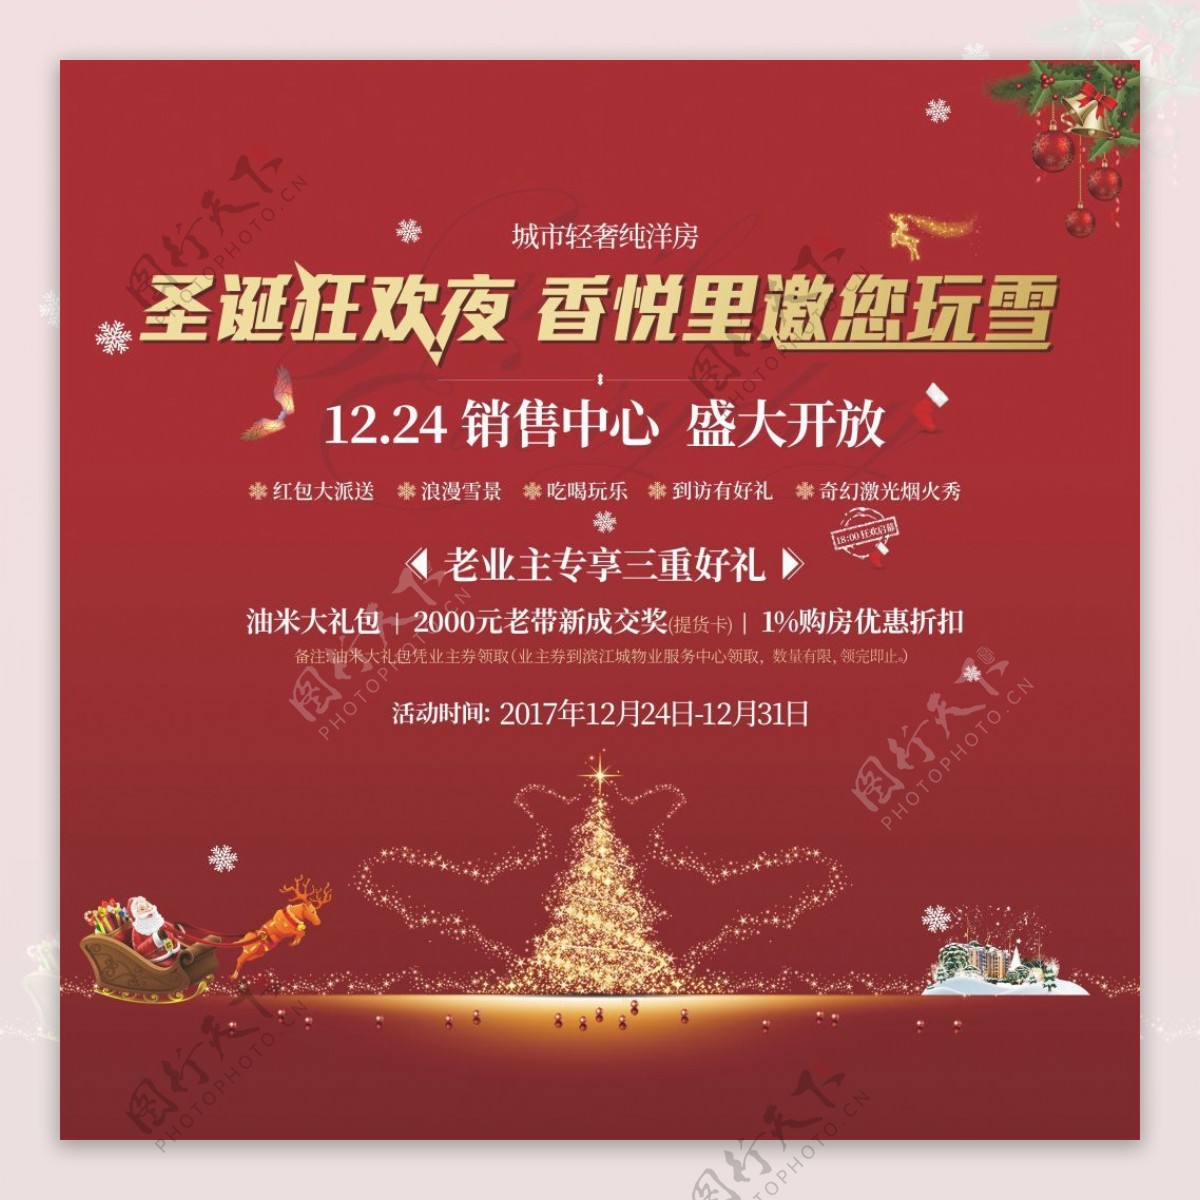 2017圣诞节活动促销红色海报